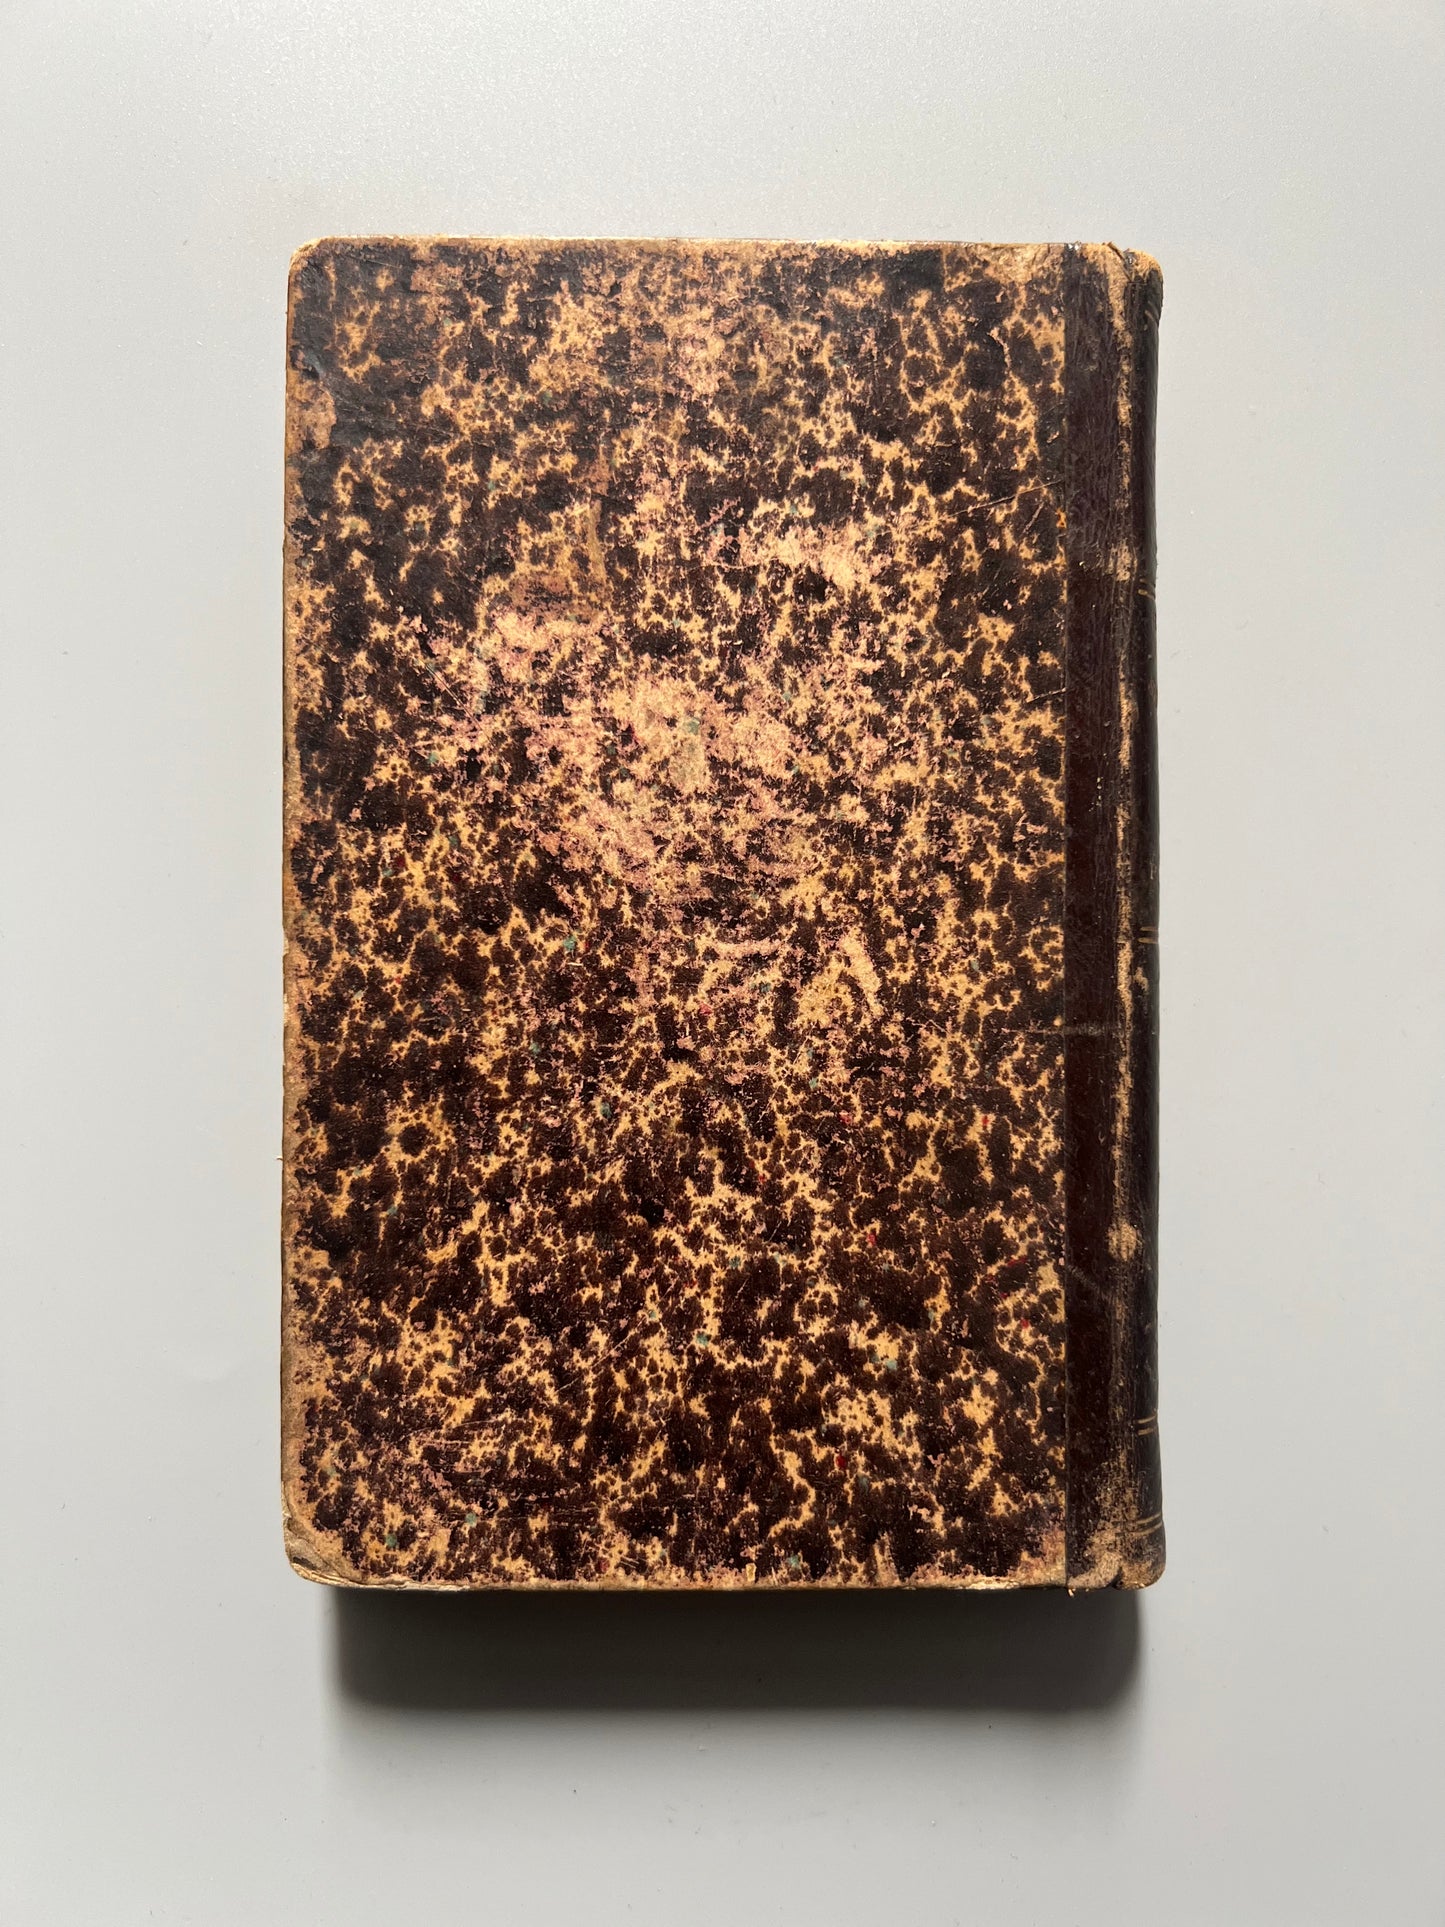 El sonambulismo provocado, H. Beaunis - Librería editorial de D. Carlos Bailly-Bailliere, 1887